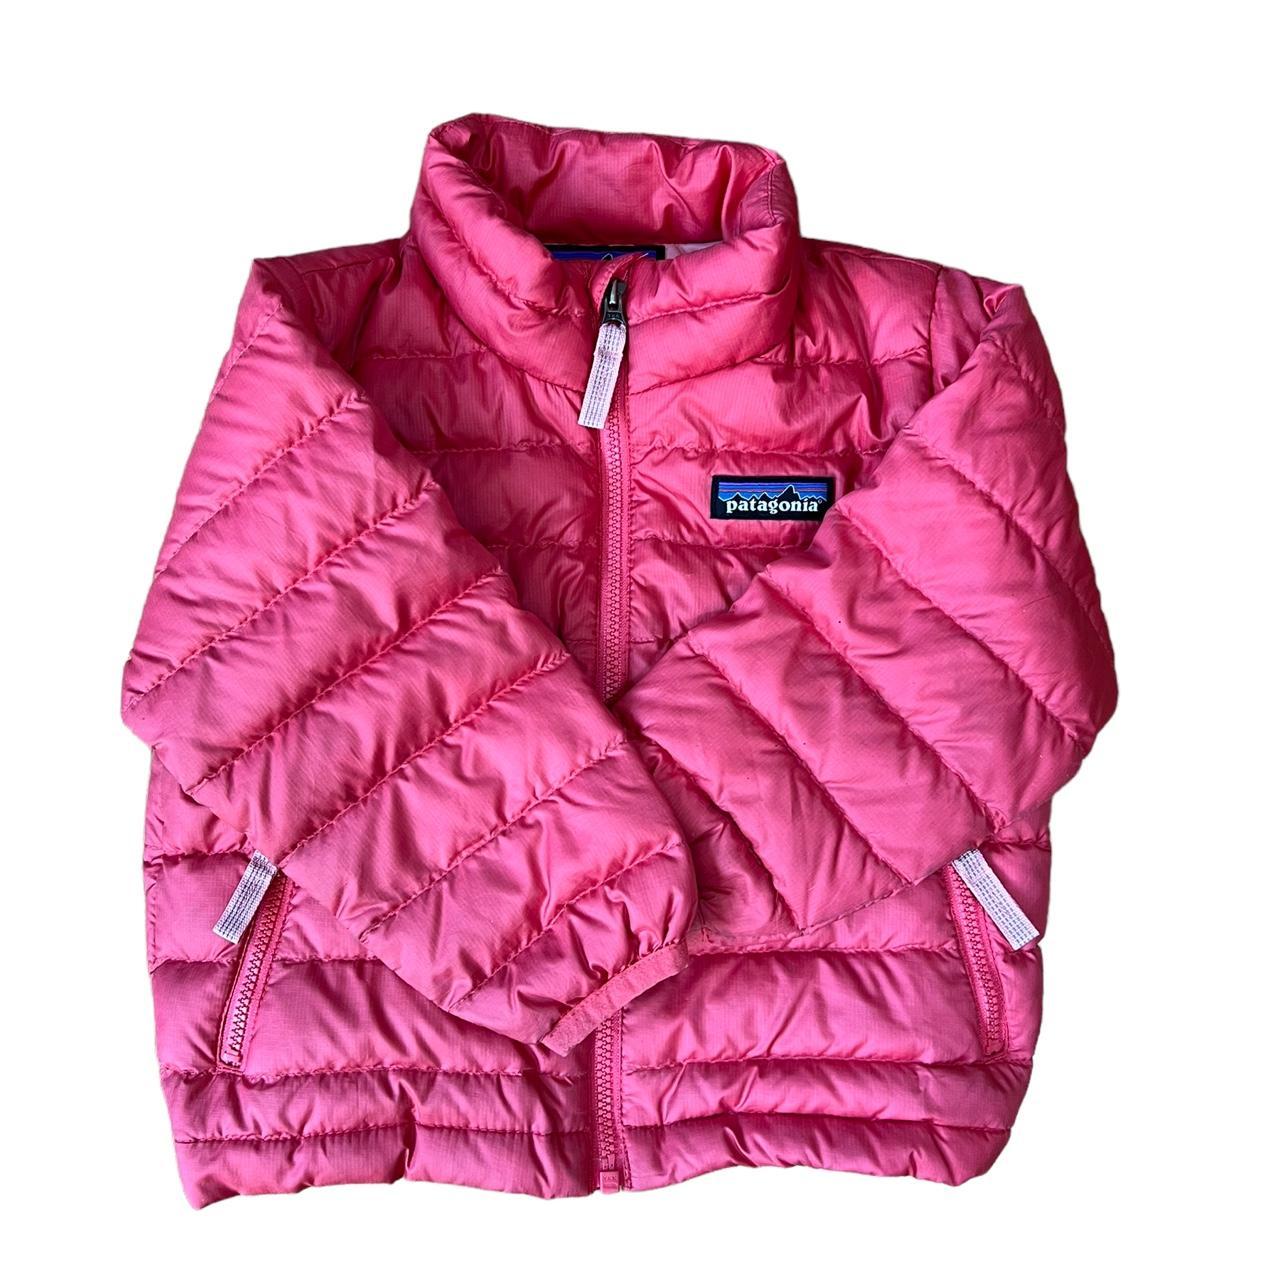 Patagonia Pink Jacket | Depop